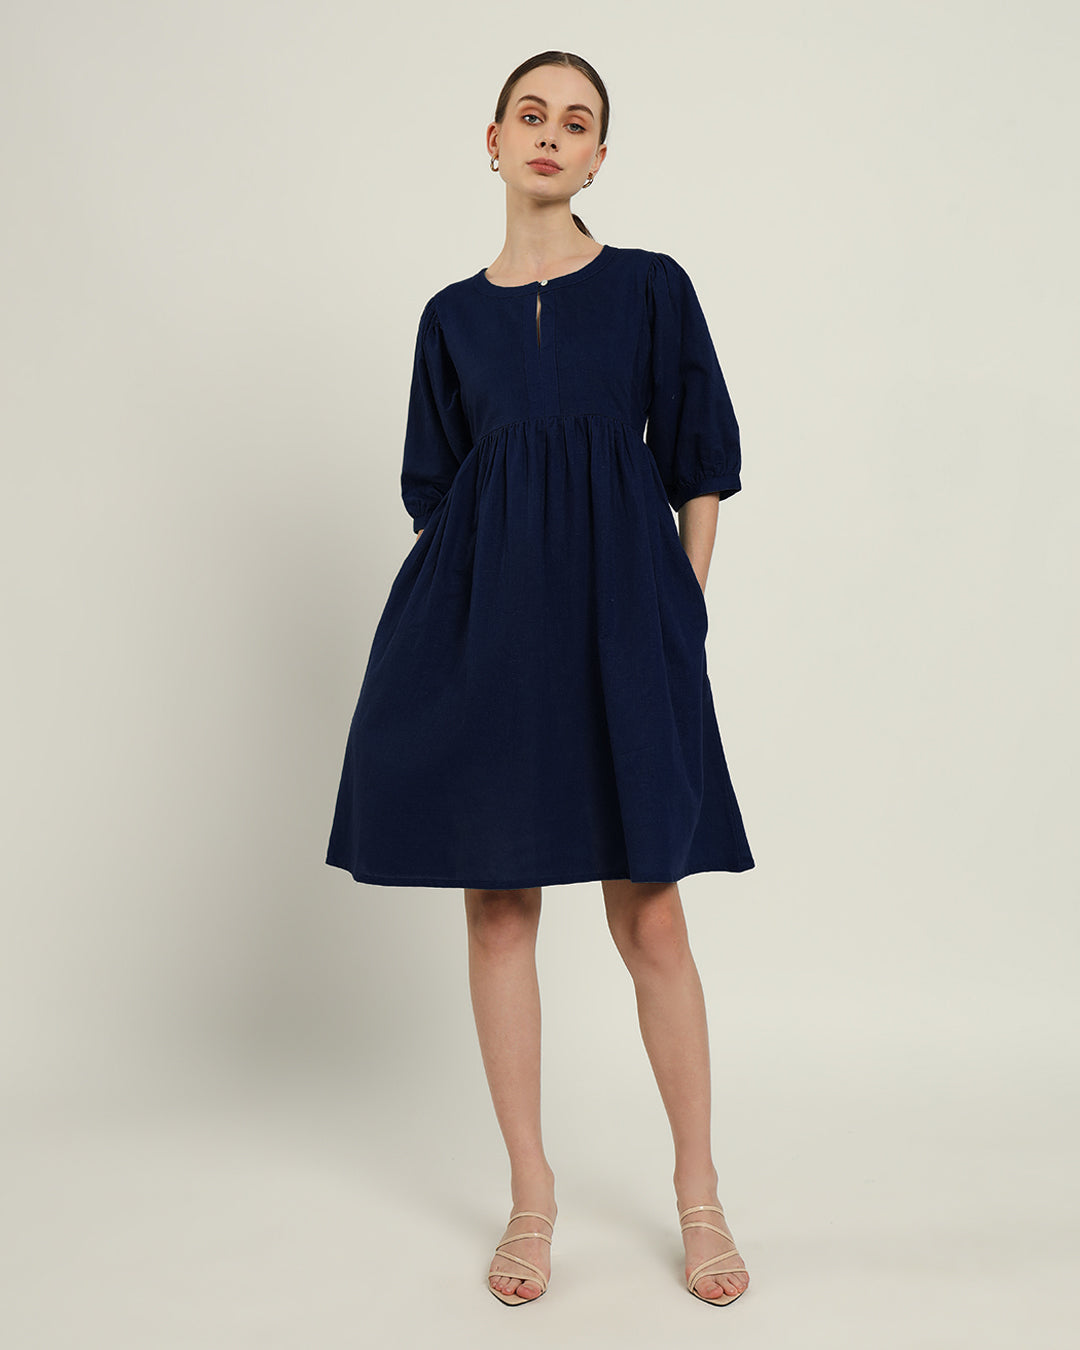 The Aira Daisy Midnight Blue Linen Dress